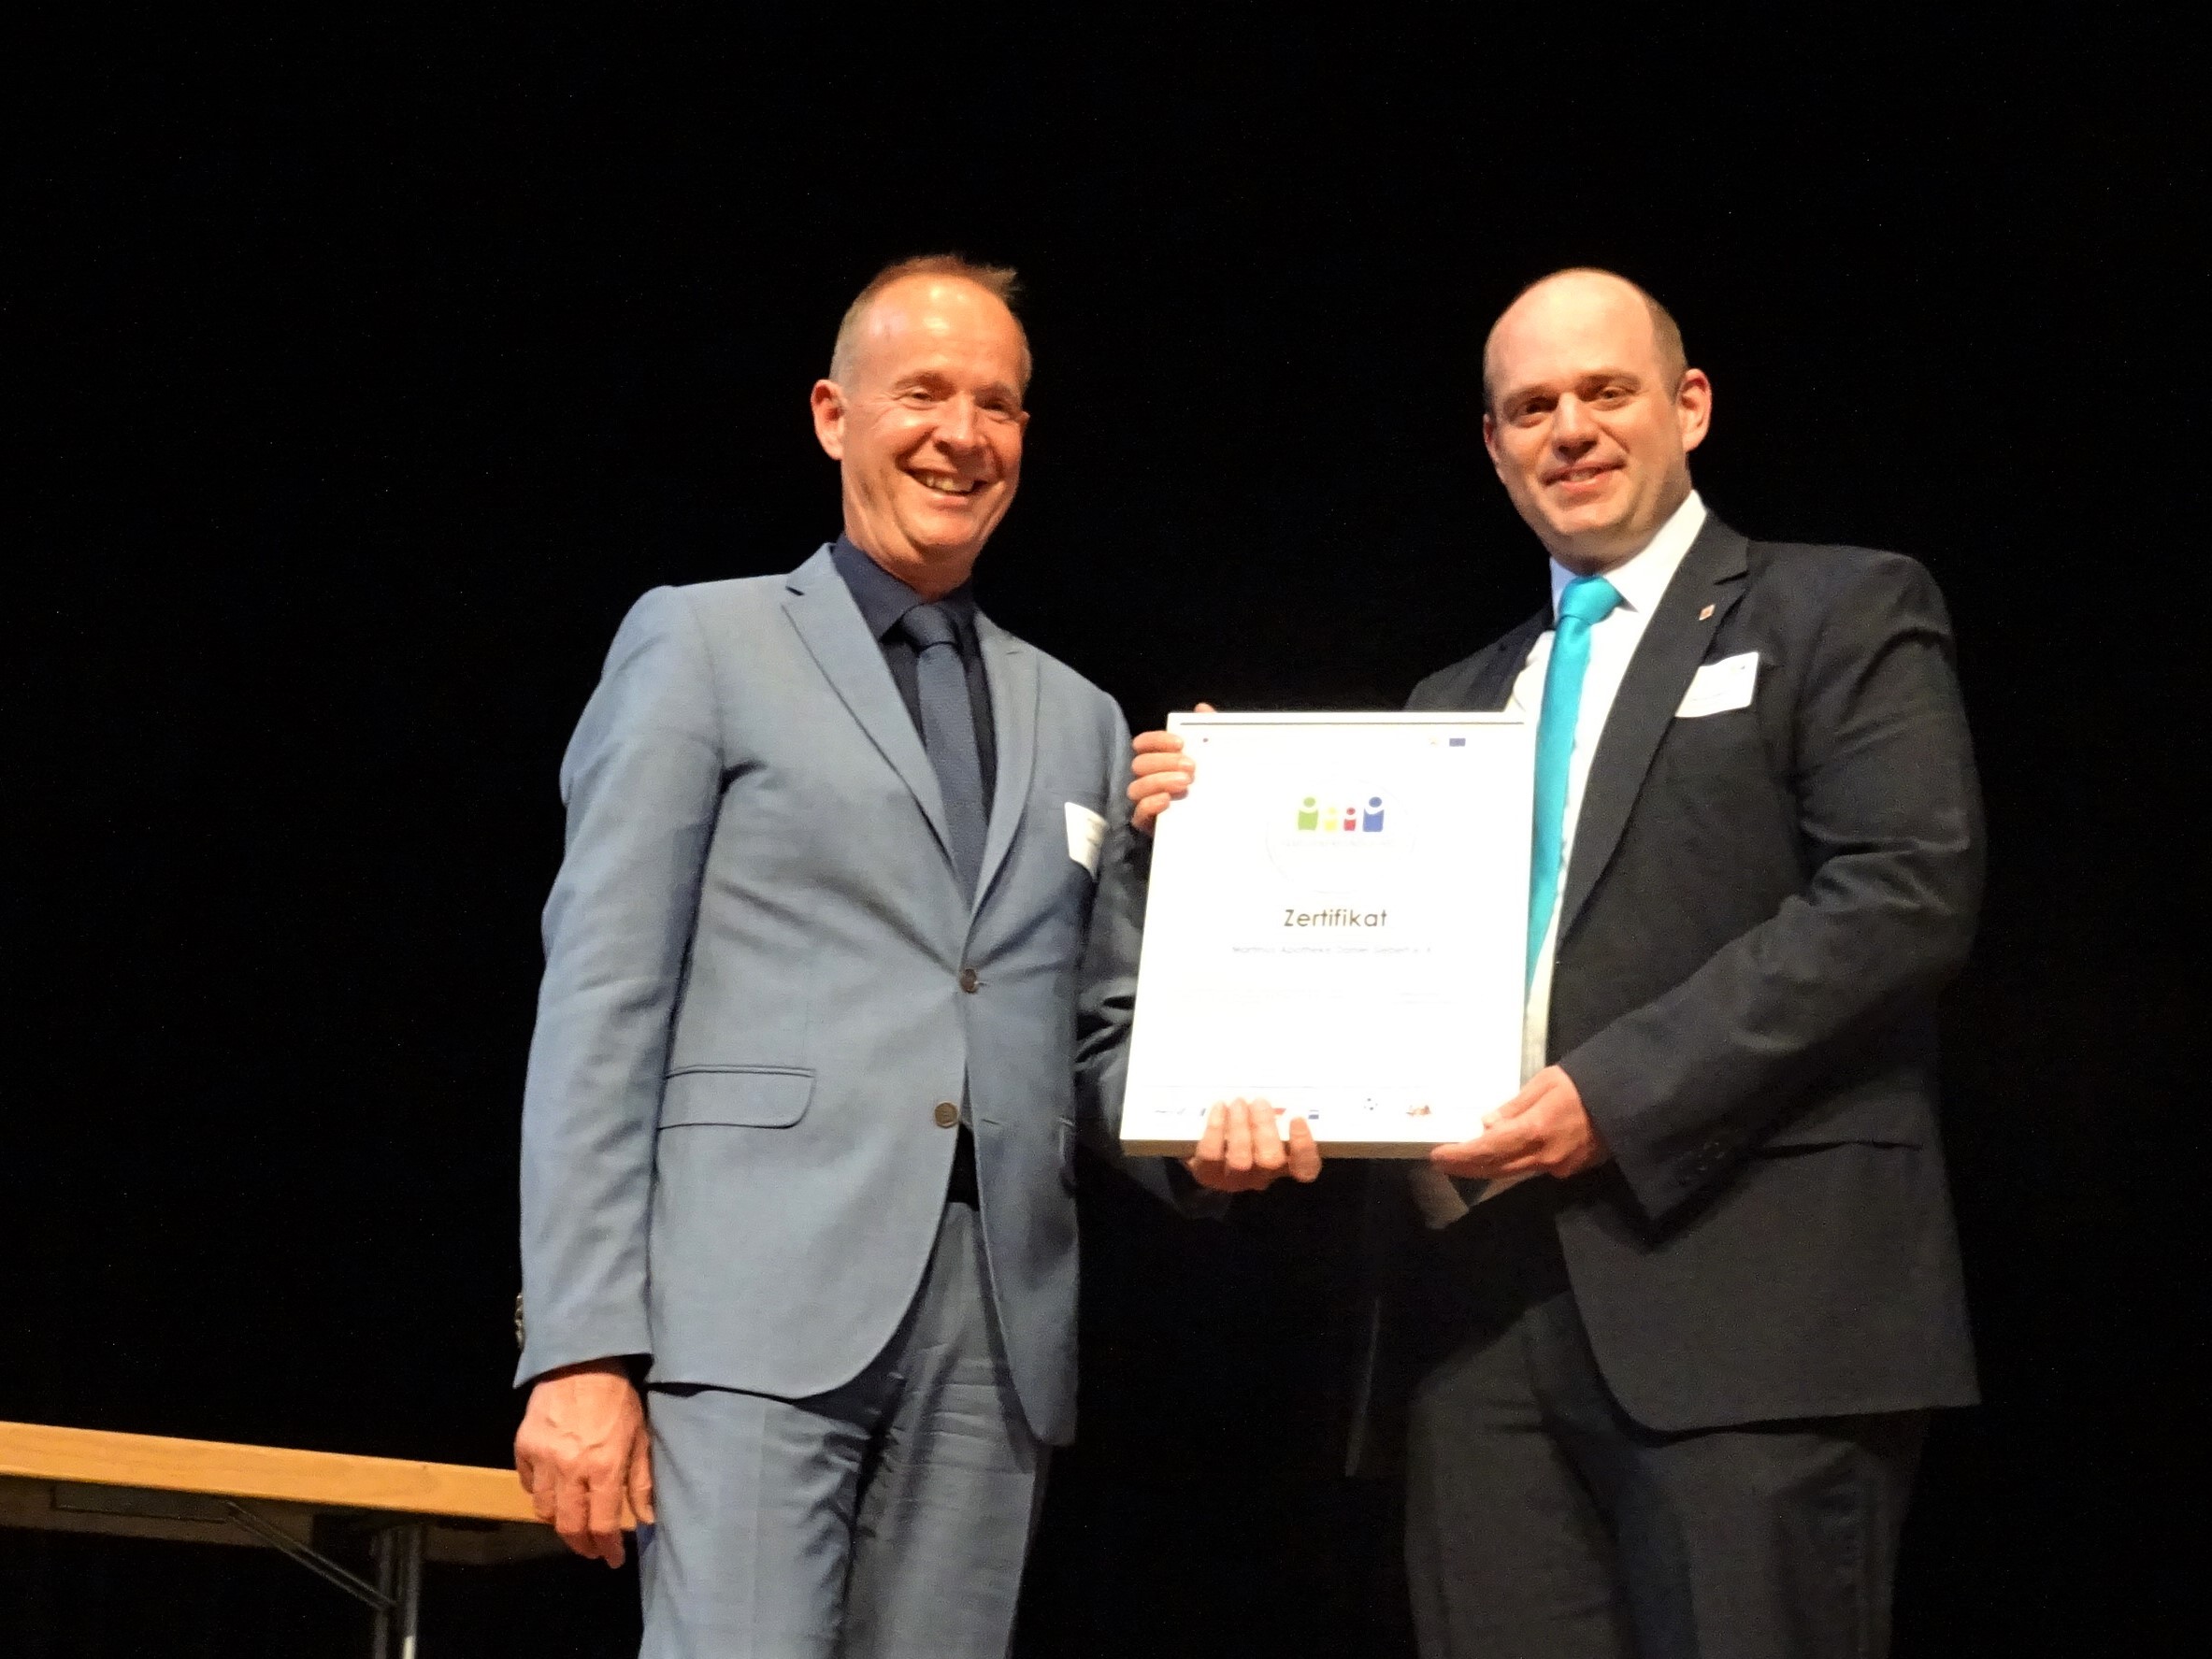 Daniel Siebert, Inhaber der Martinus-Apotheke, freut sich über die Auszeichnung von Sigrid Mynar